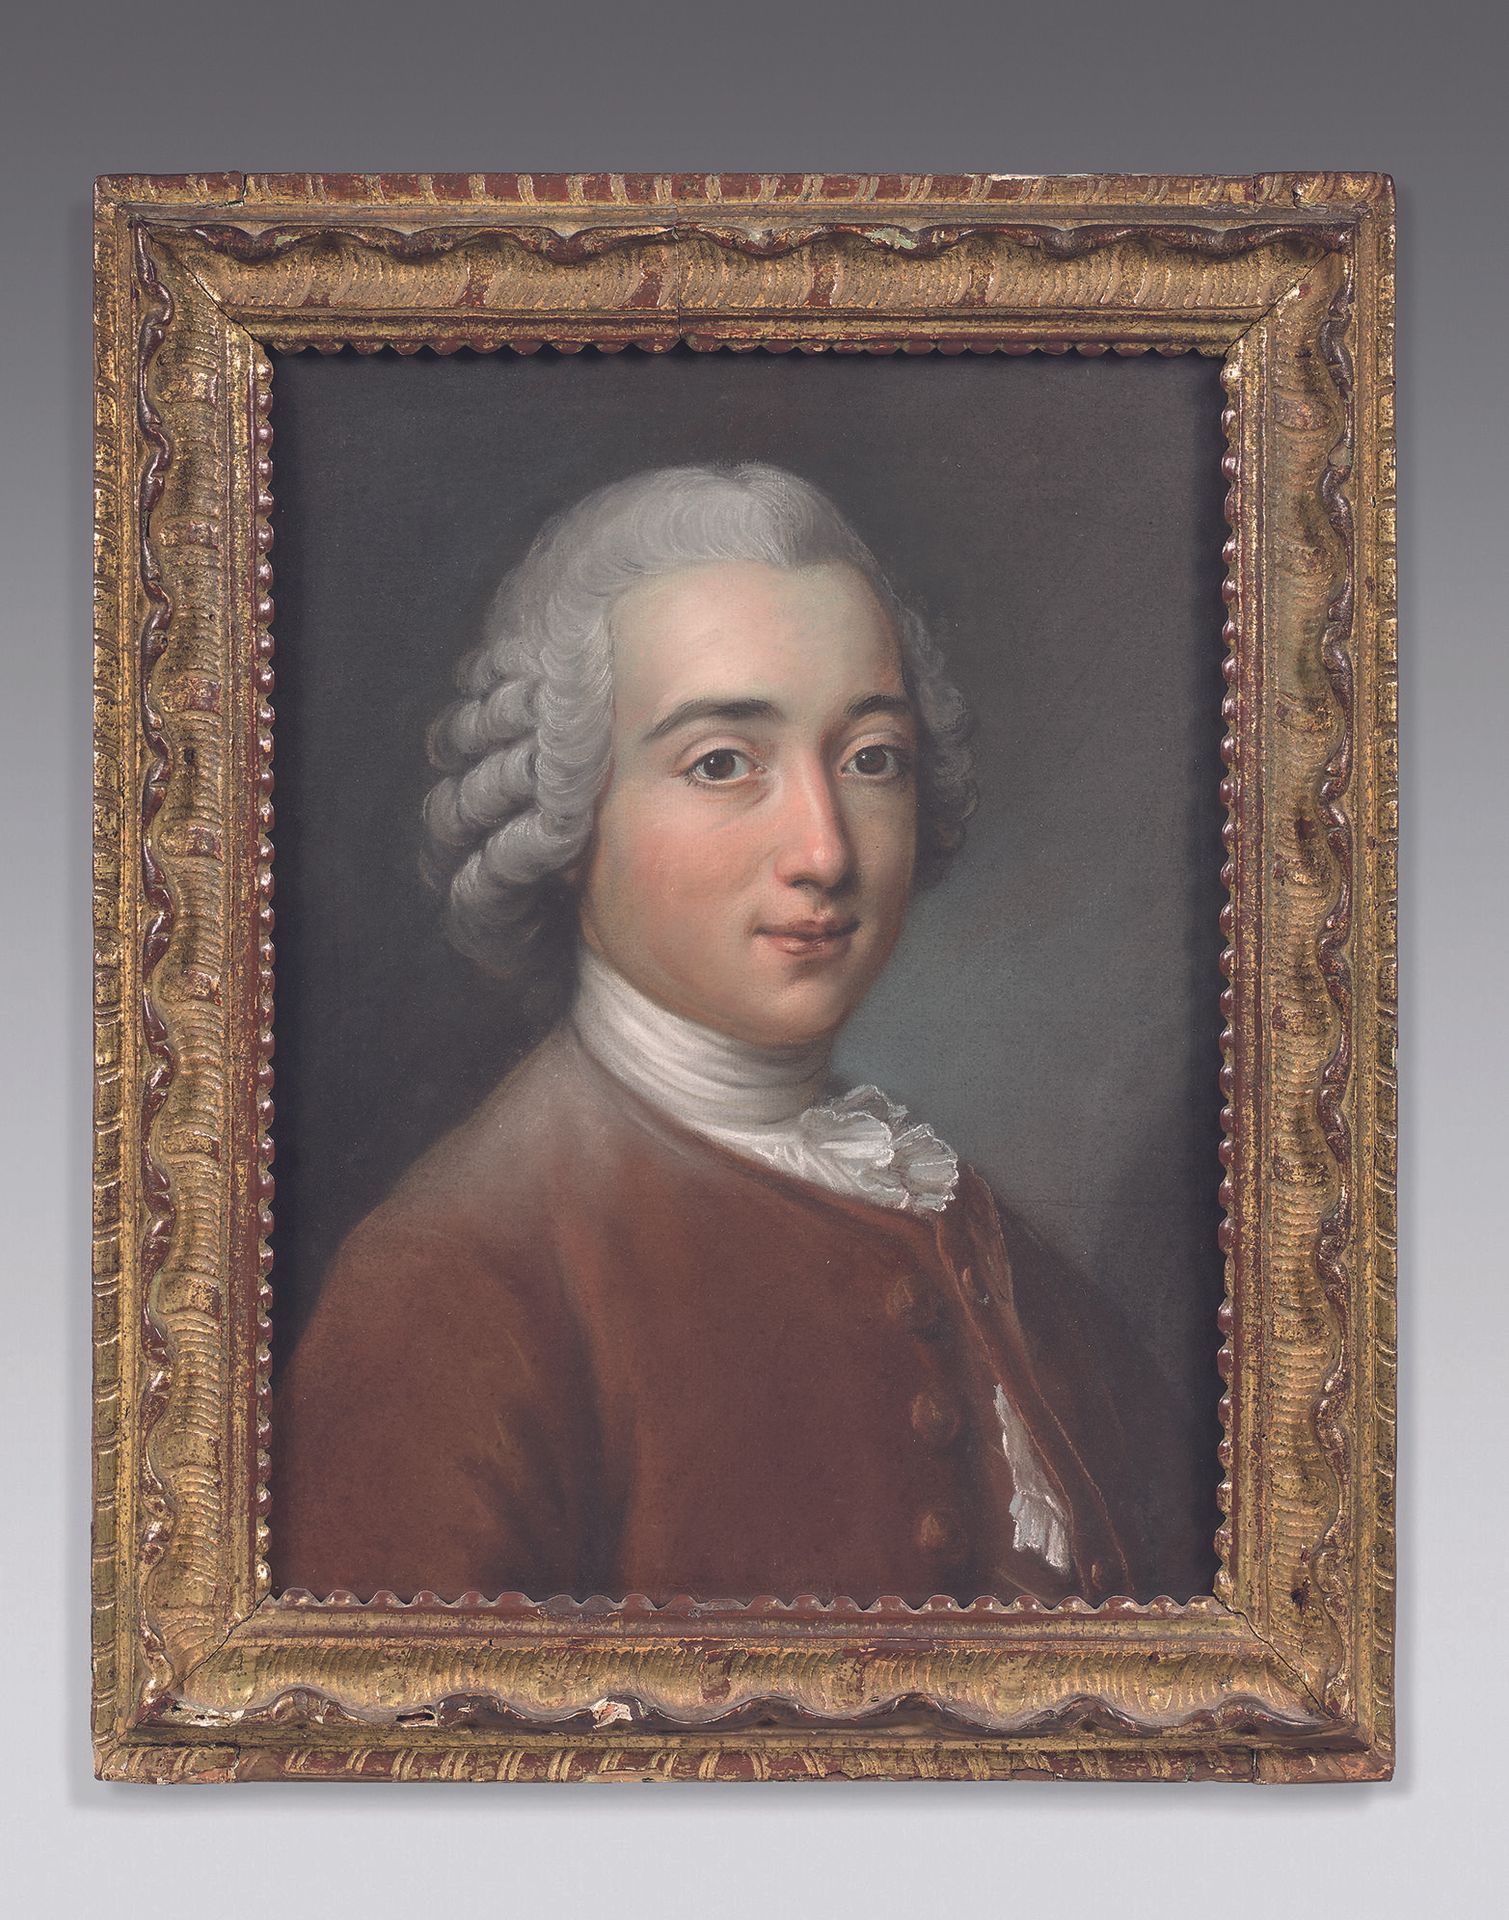 Null ESCUELA FRANCESA del siglo XVIII
Retrato de un hombre
Pastel.
44 x 33,5 cm